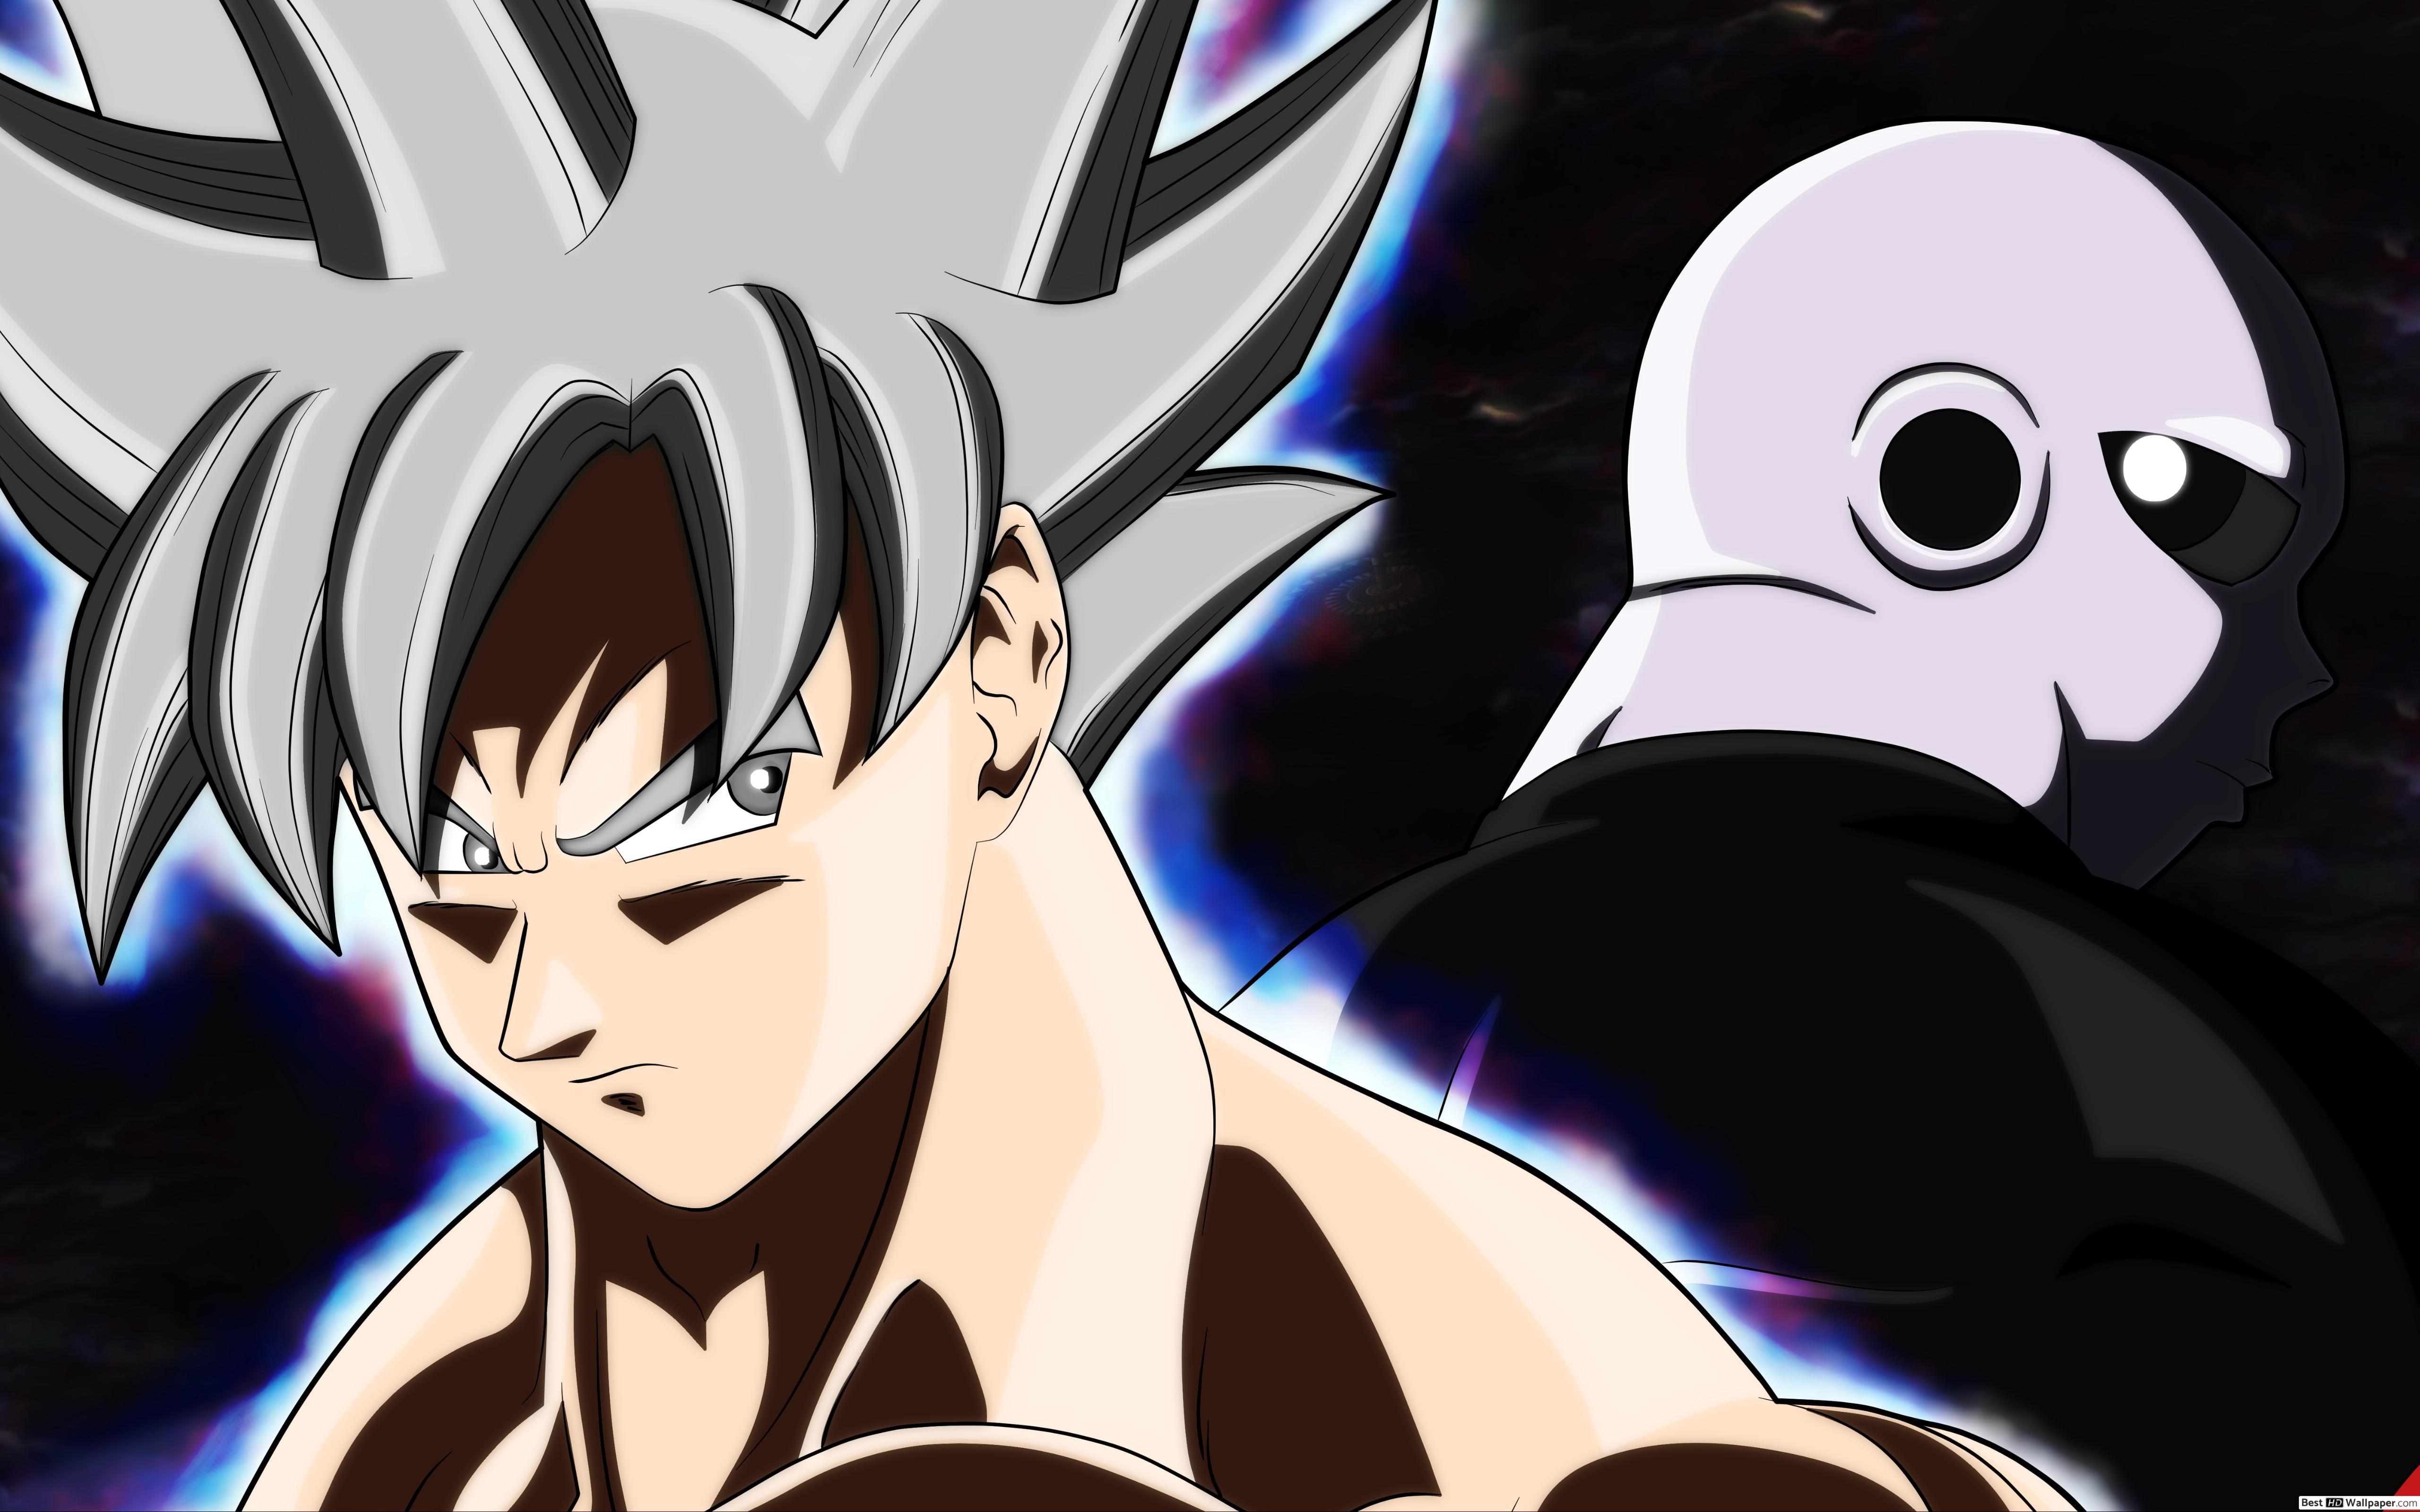 Goku vs Jiren 4K Wallpapers - Top Free Goku vs Jiren 4K Backgrounds